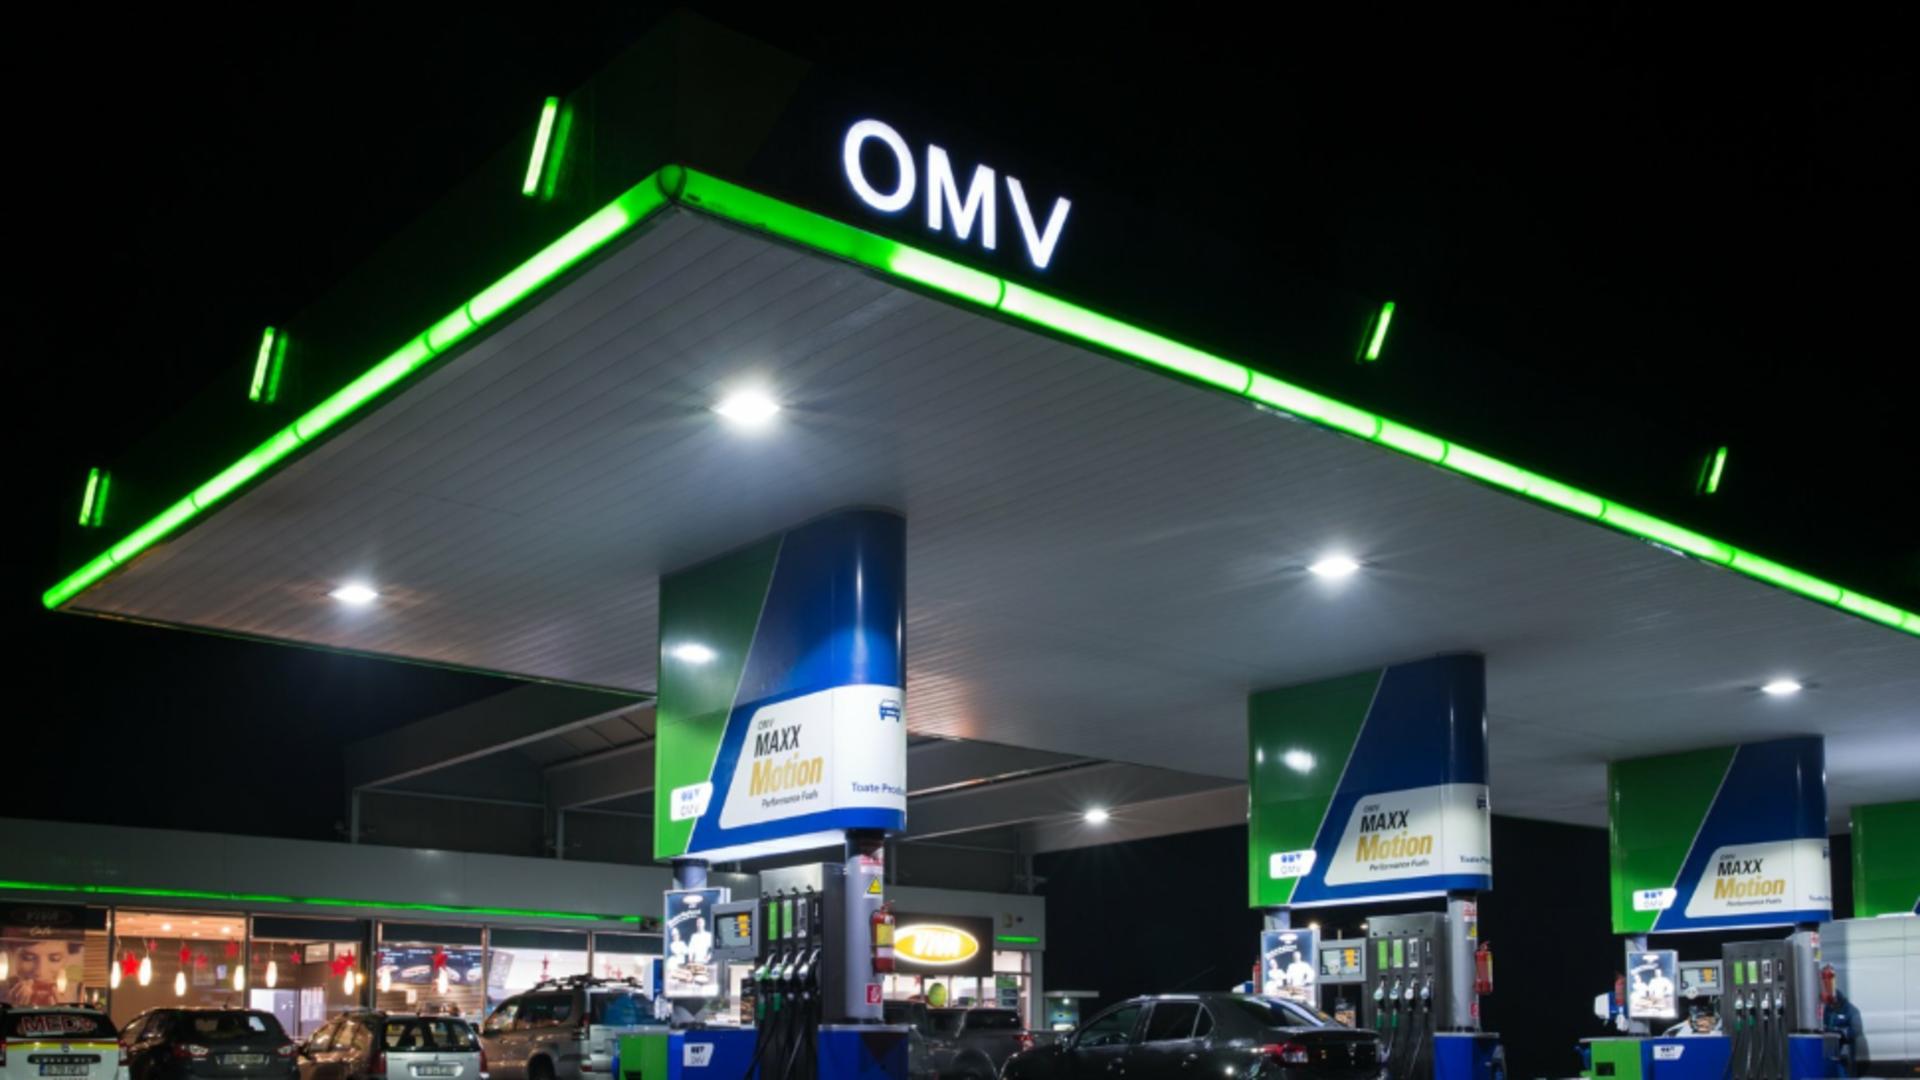 Control ANPC în benzinăriile OMV. Foto/Arhivă